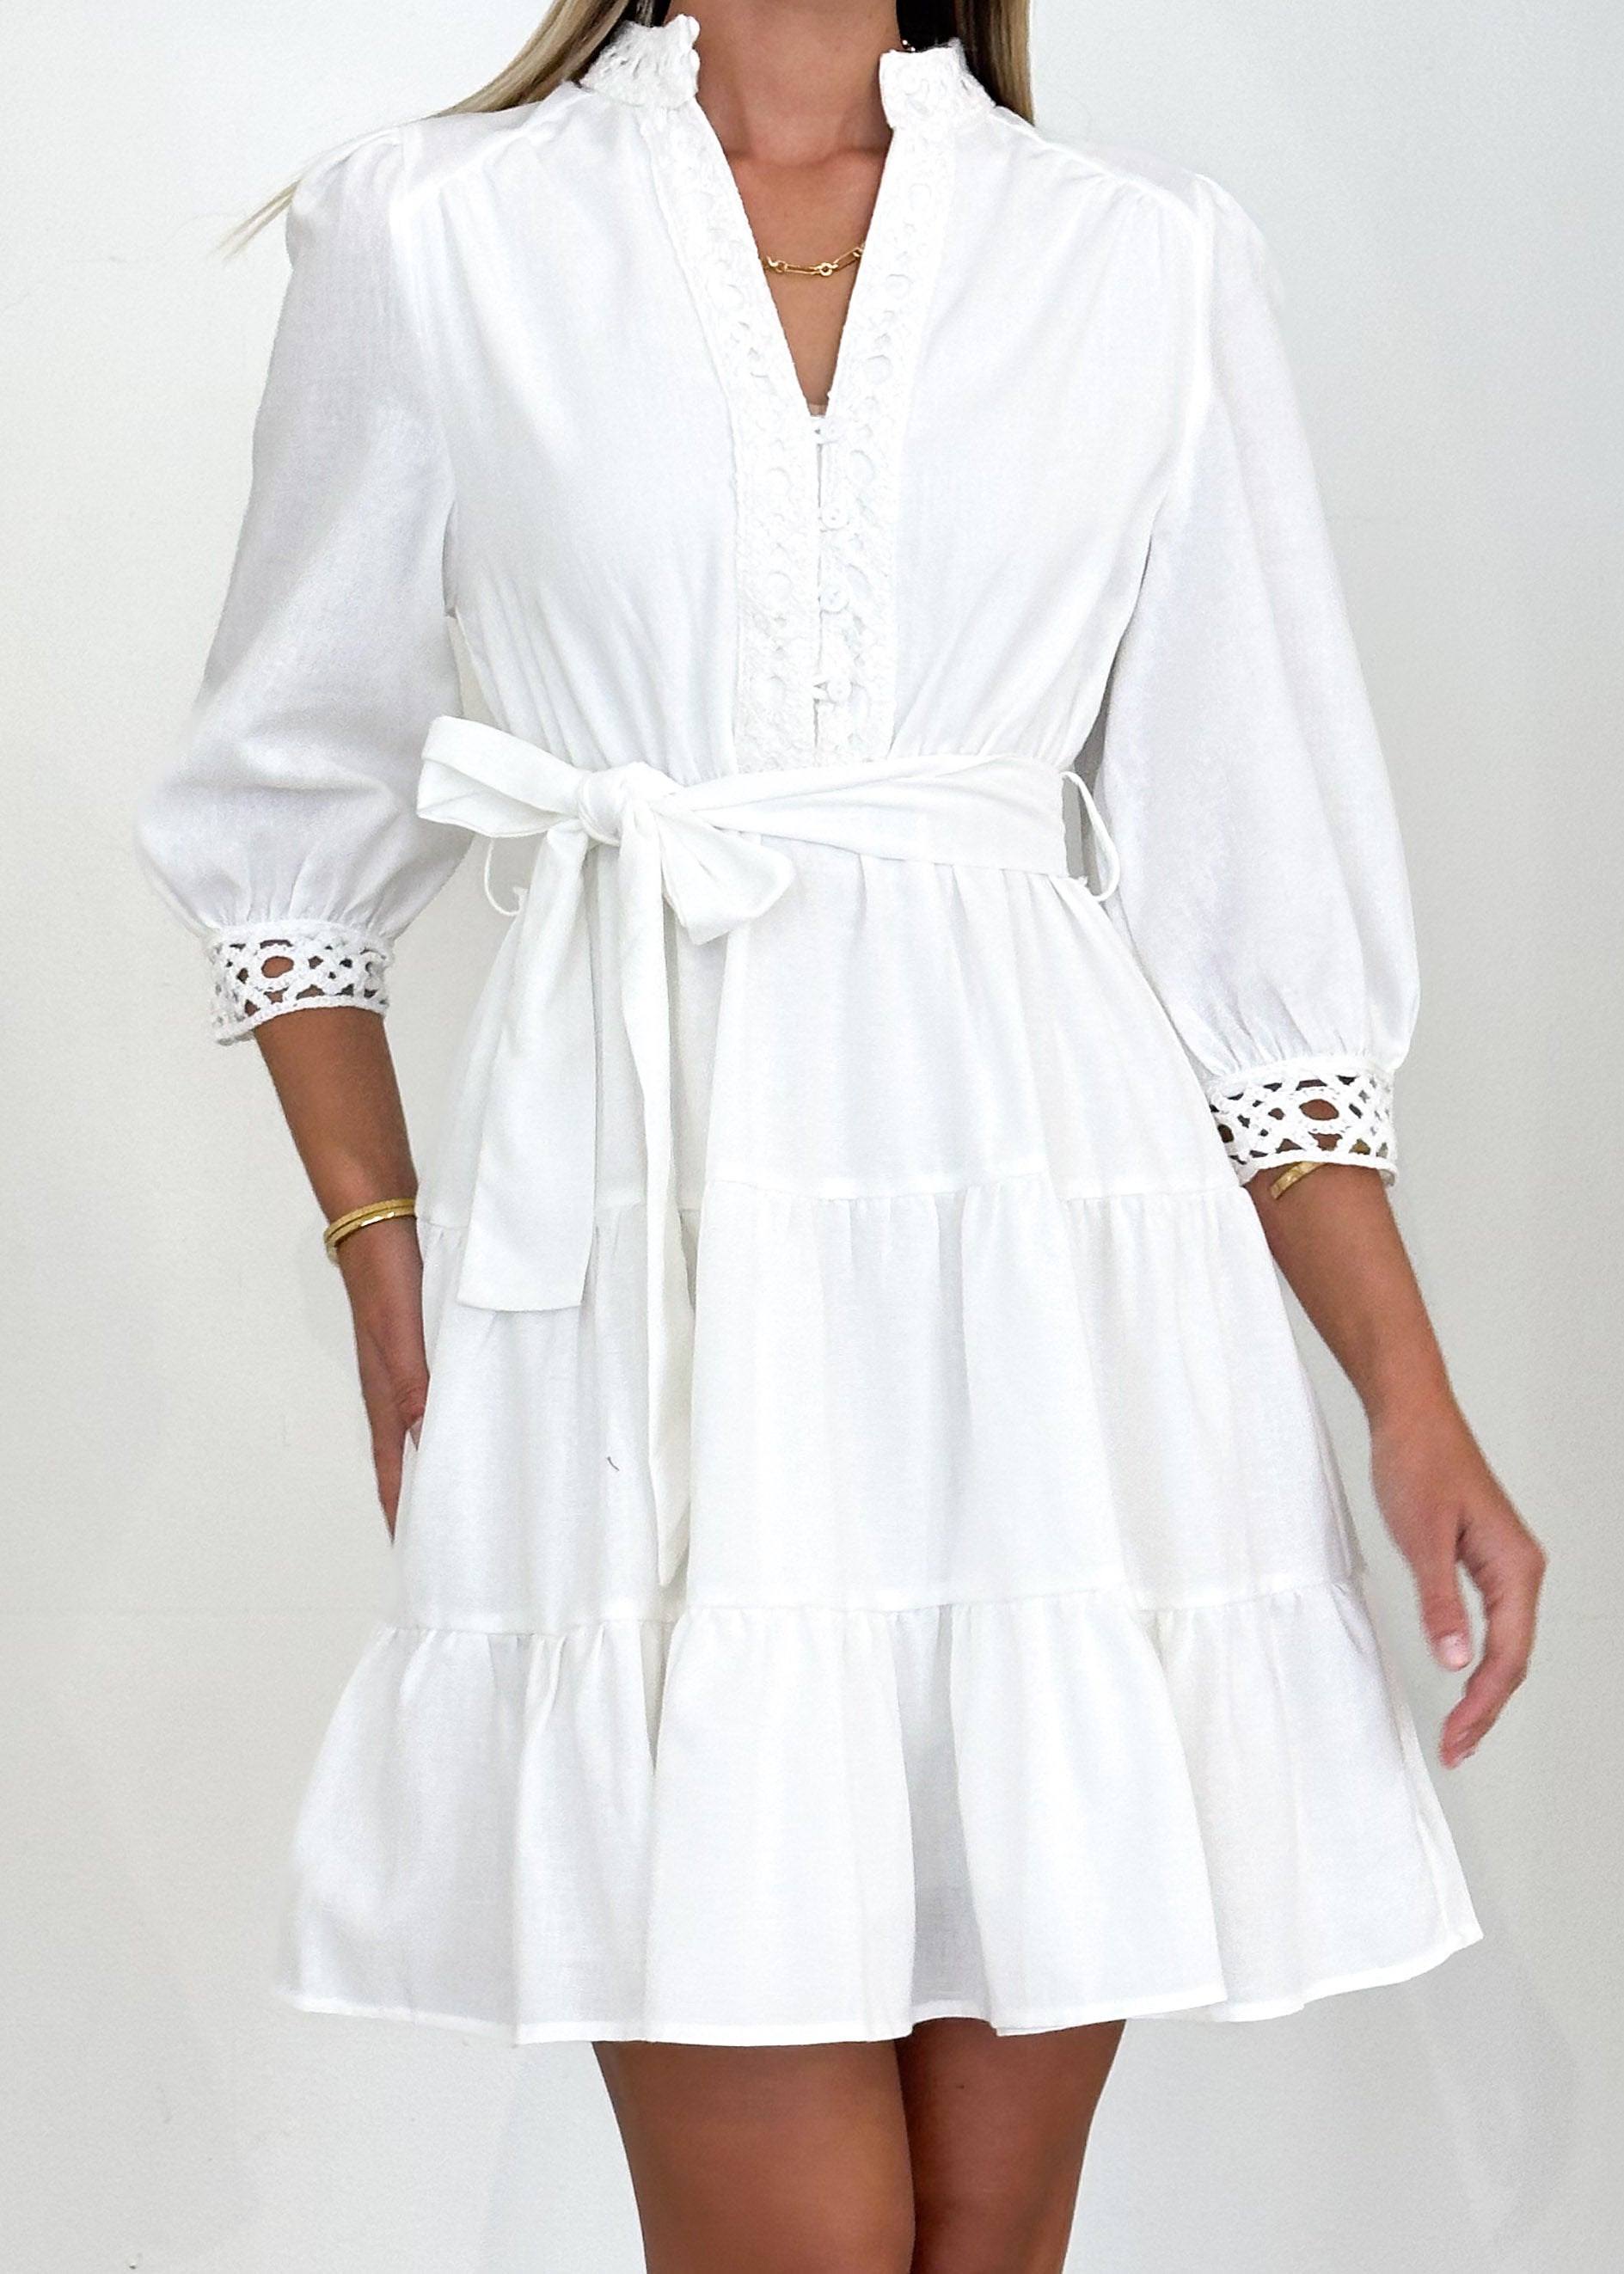 Nourla Dress - Off White